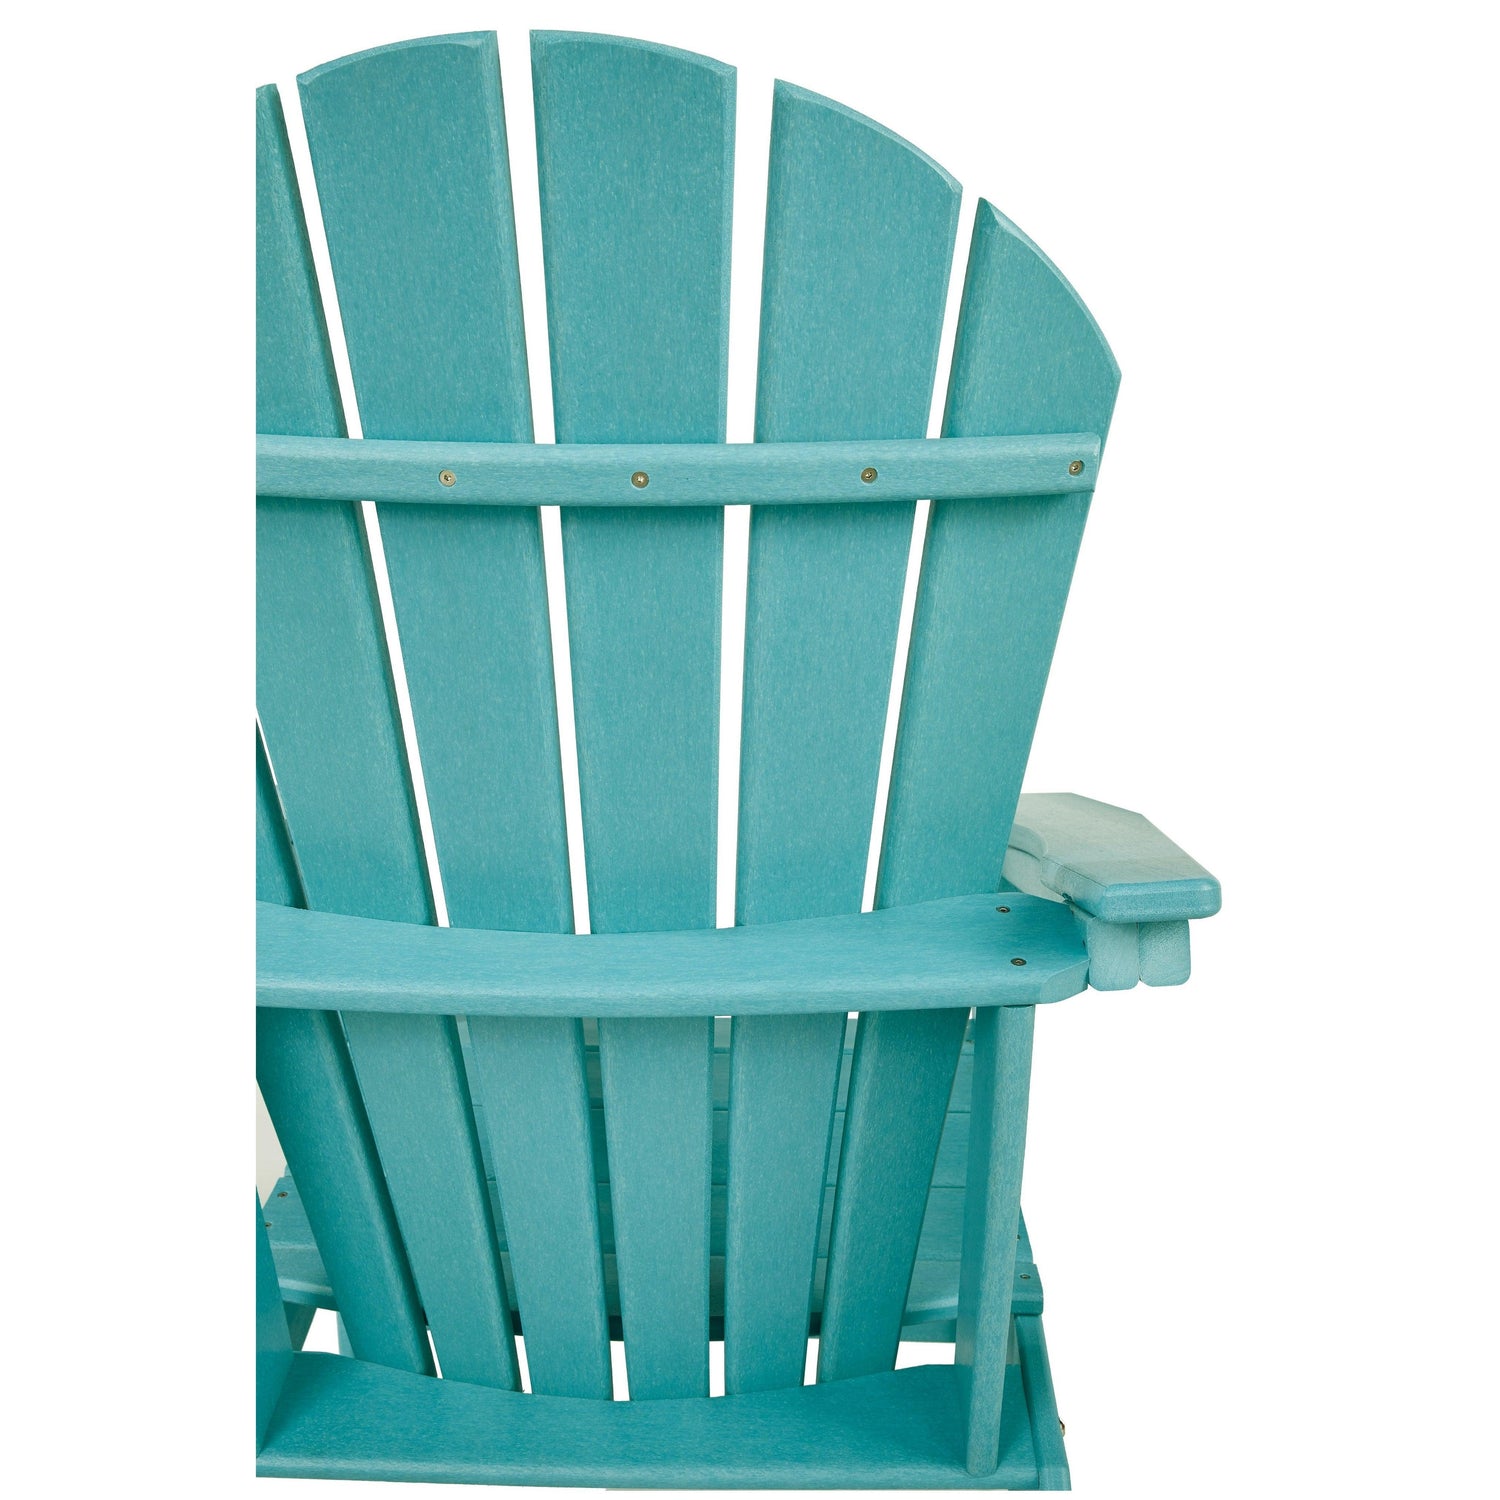 Sundown Treasure Adirondack Chair